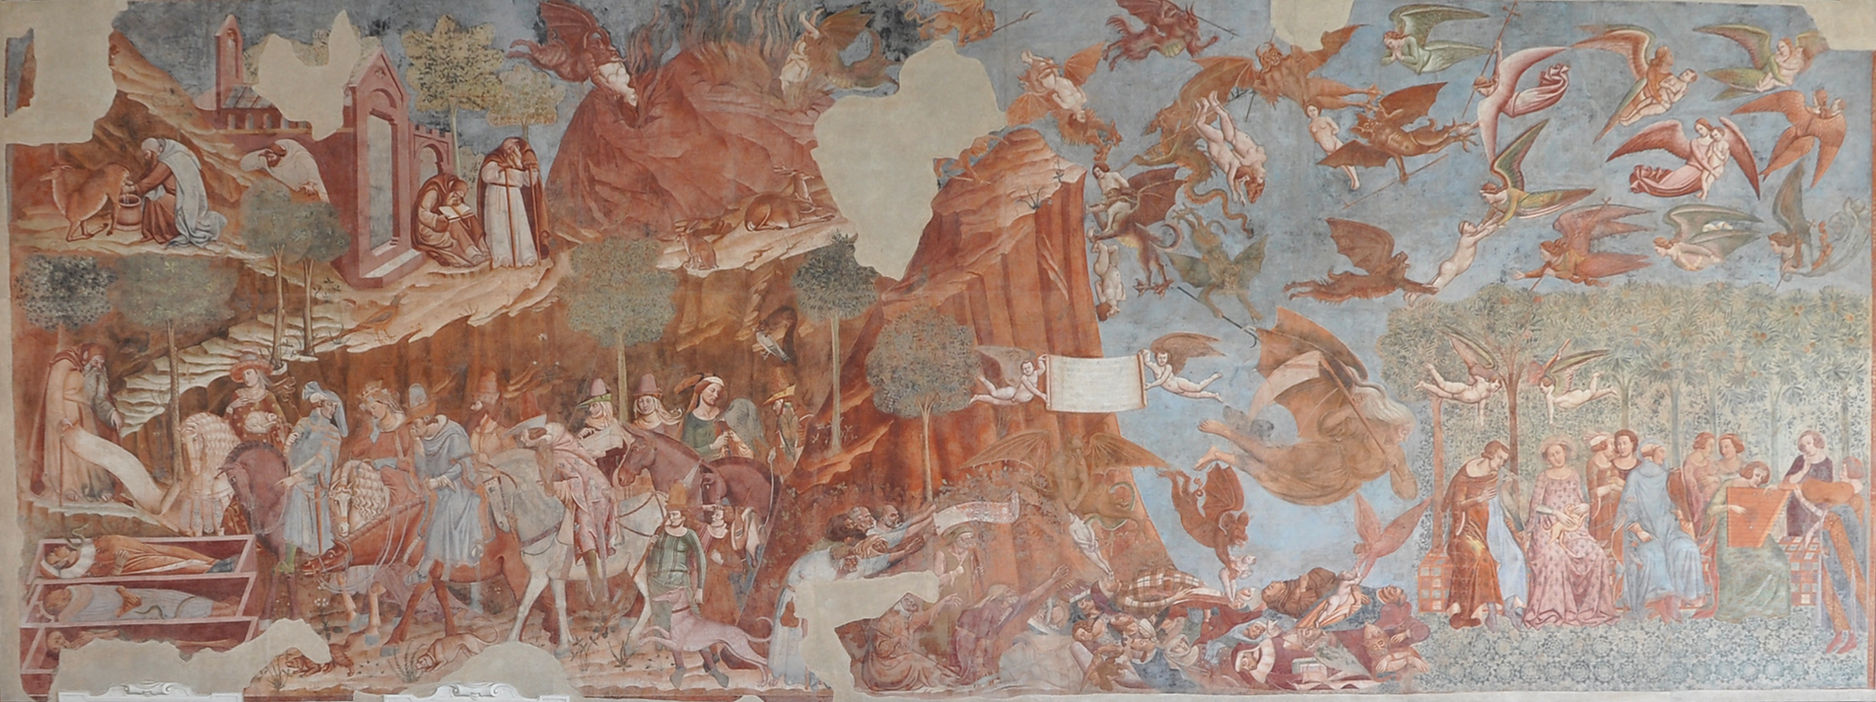 Buonamico Buffalmacco, Trionfo della Morte, Ciclo di affreschi nel Camposanto di Pisa, 1336-1341.